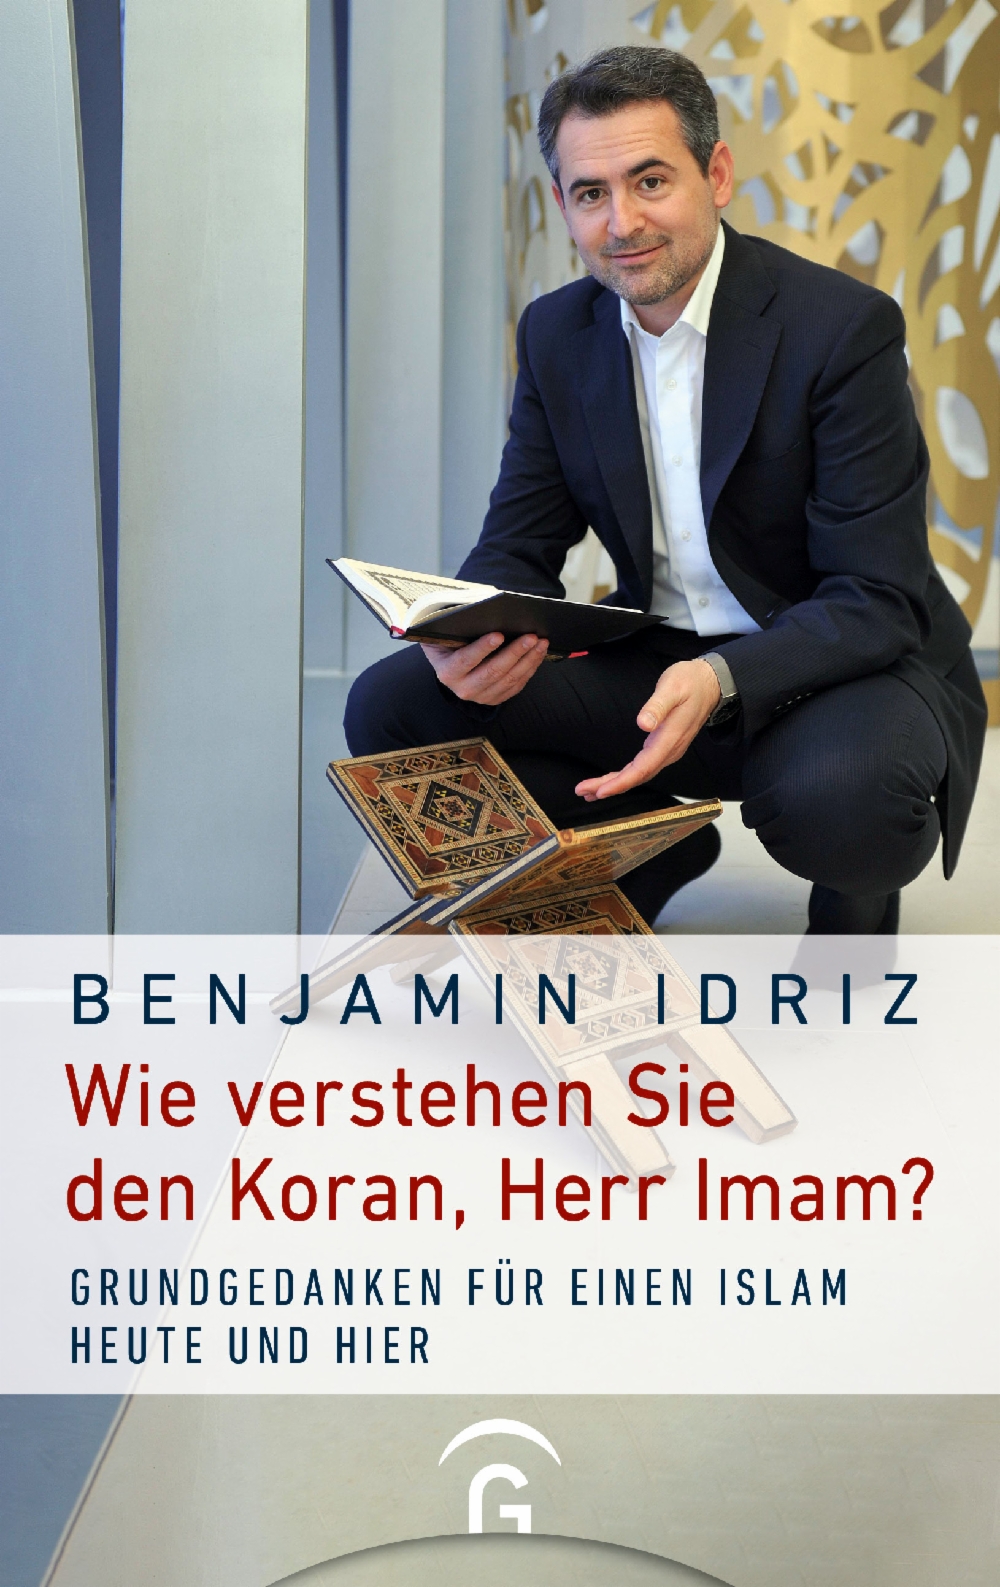 Buchcover von Benjamin Idriz "Wie verstehen Sie den Koran, Herr Imam?", Gütersloher Verlagshaus 2021; Quelle: Verlag